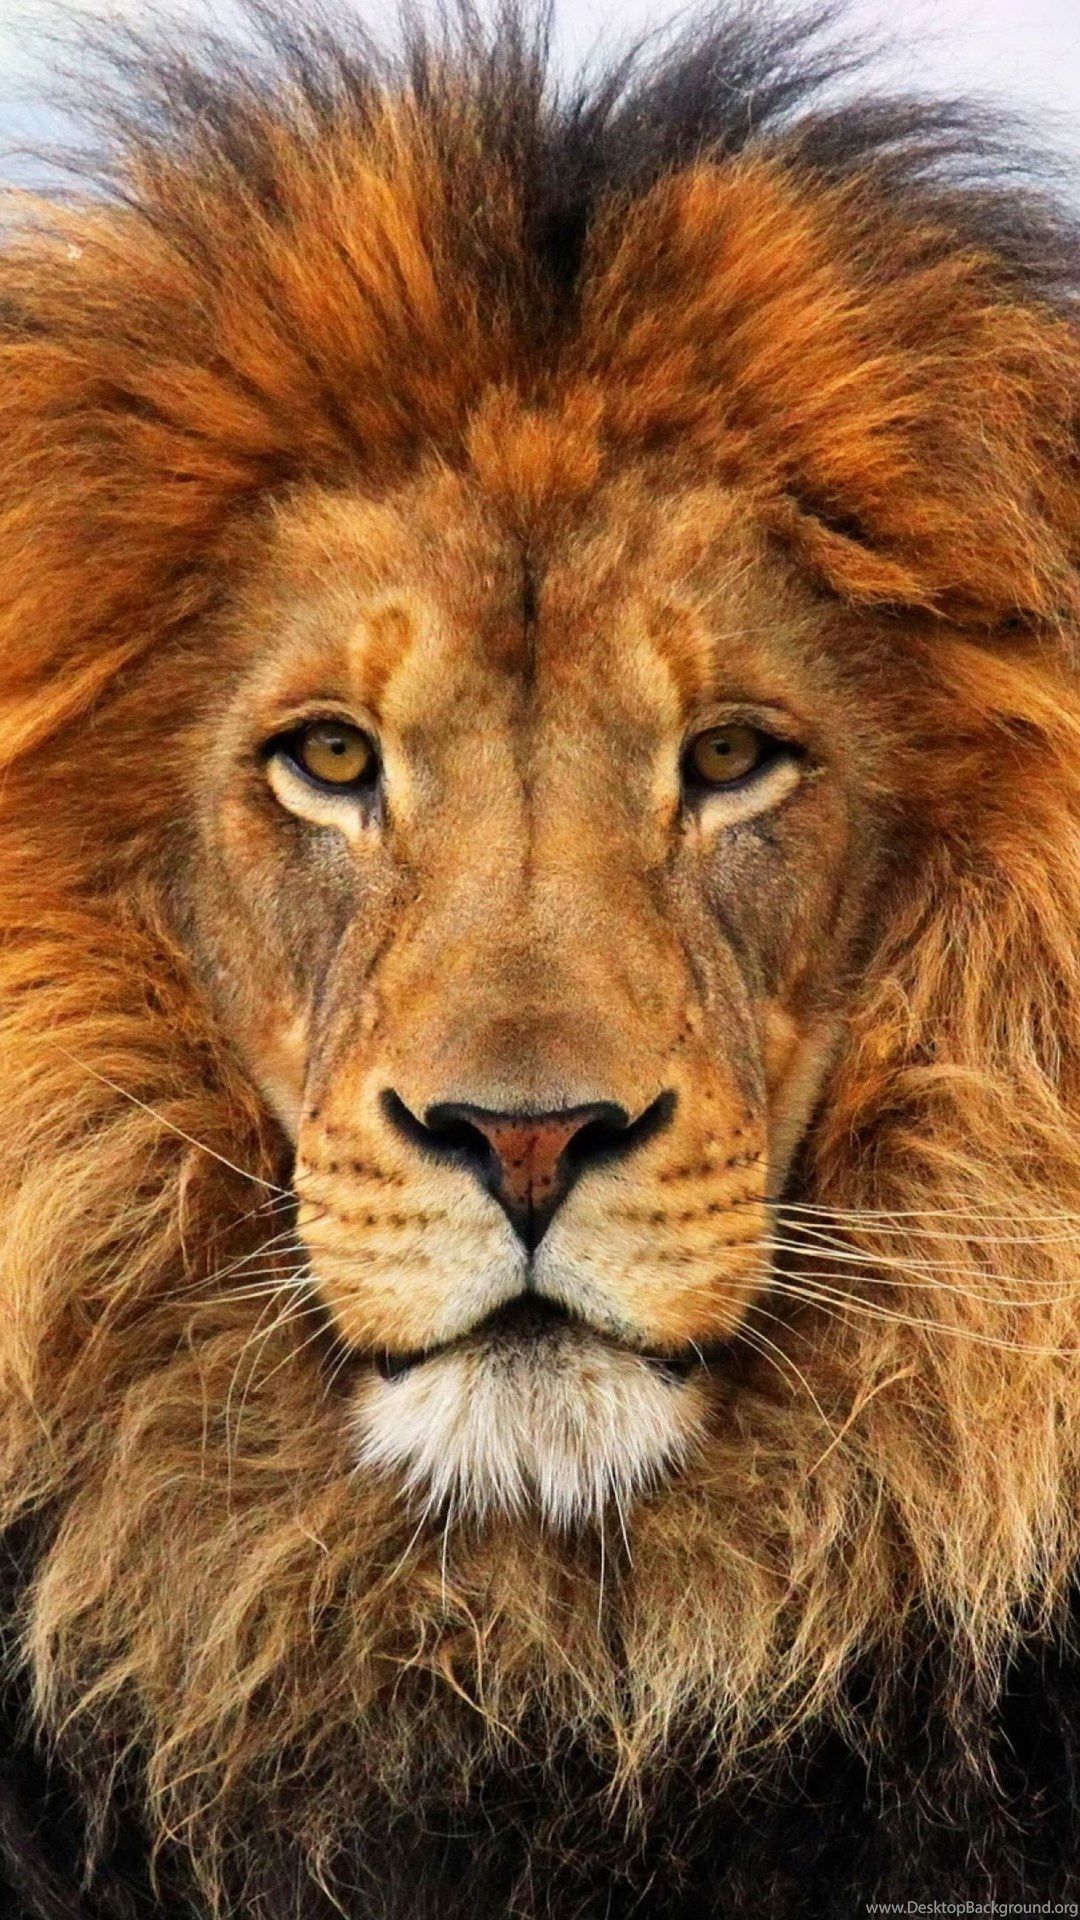 Lion Image 4K